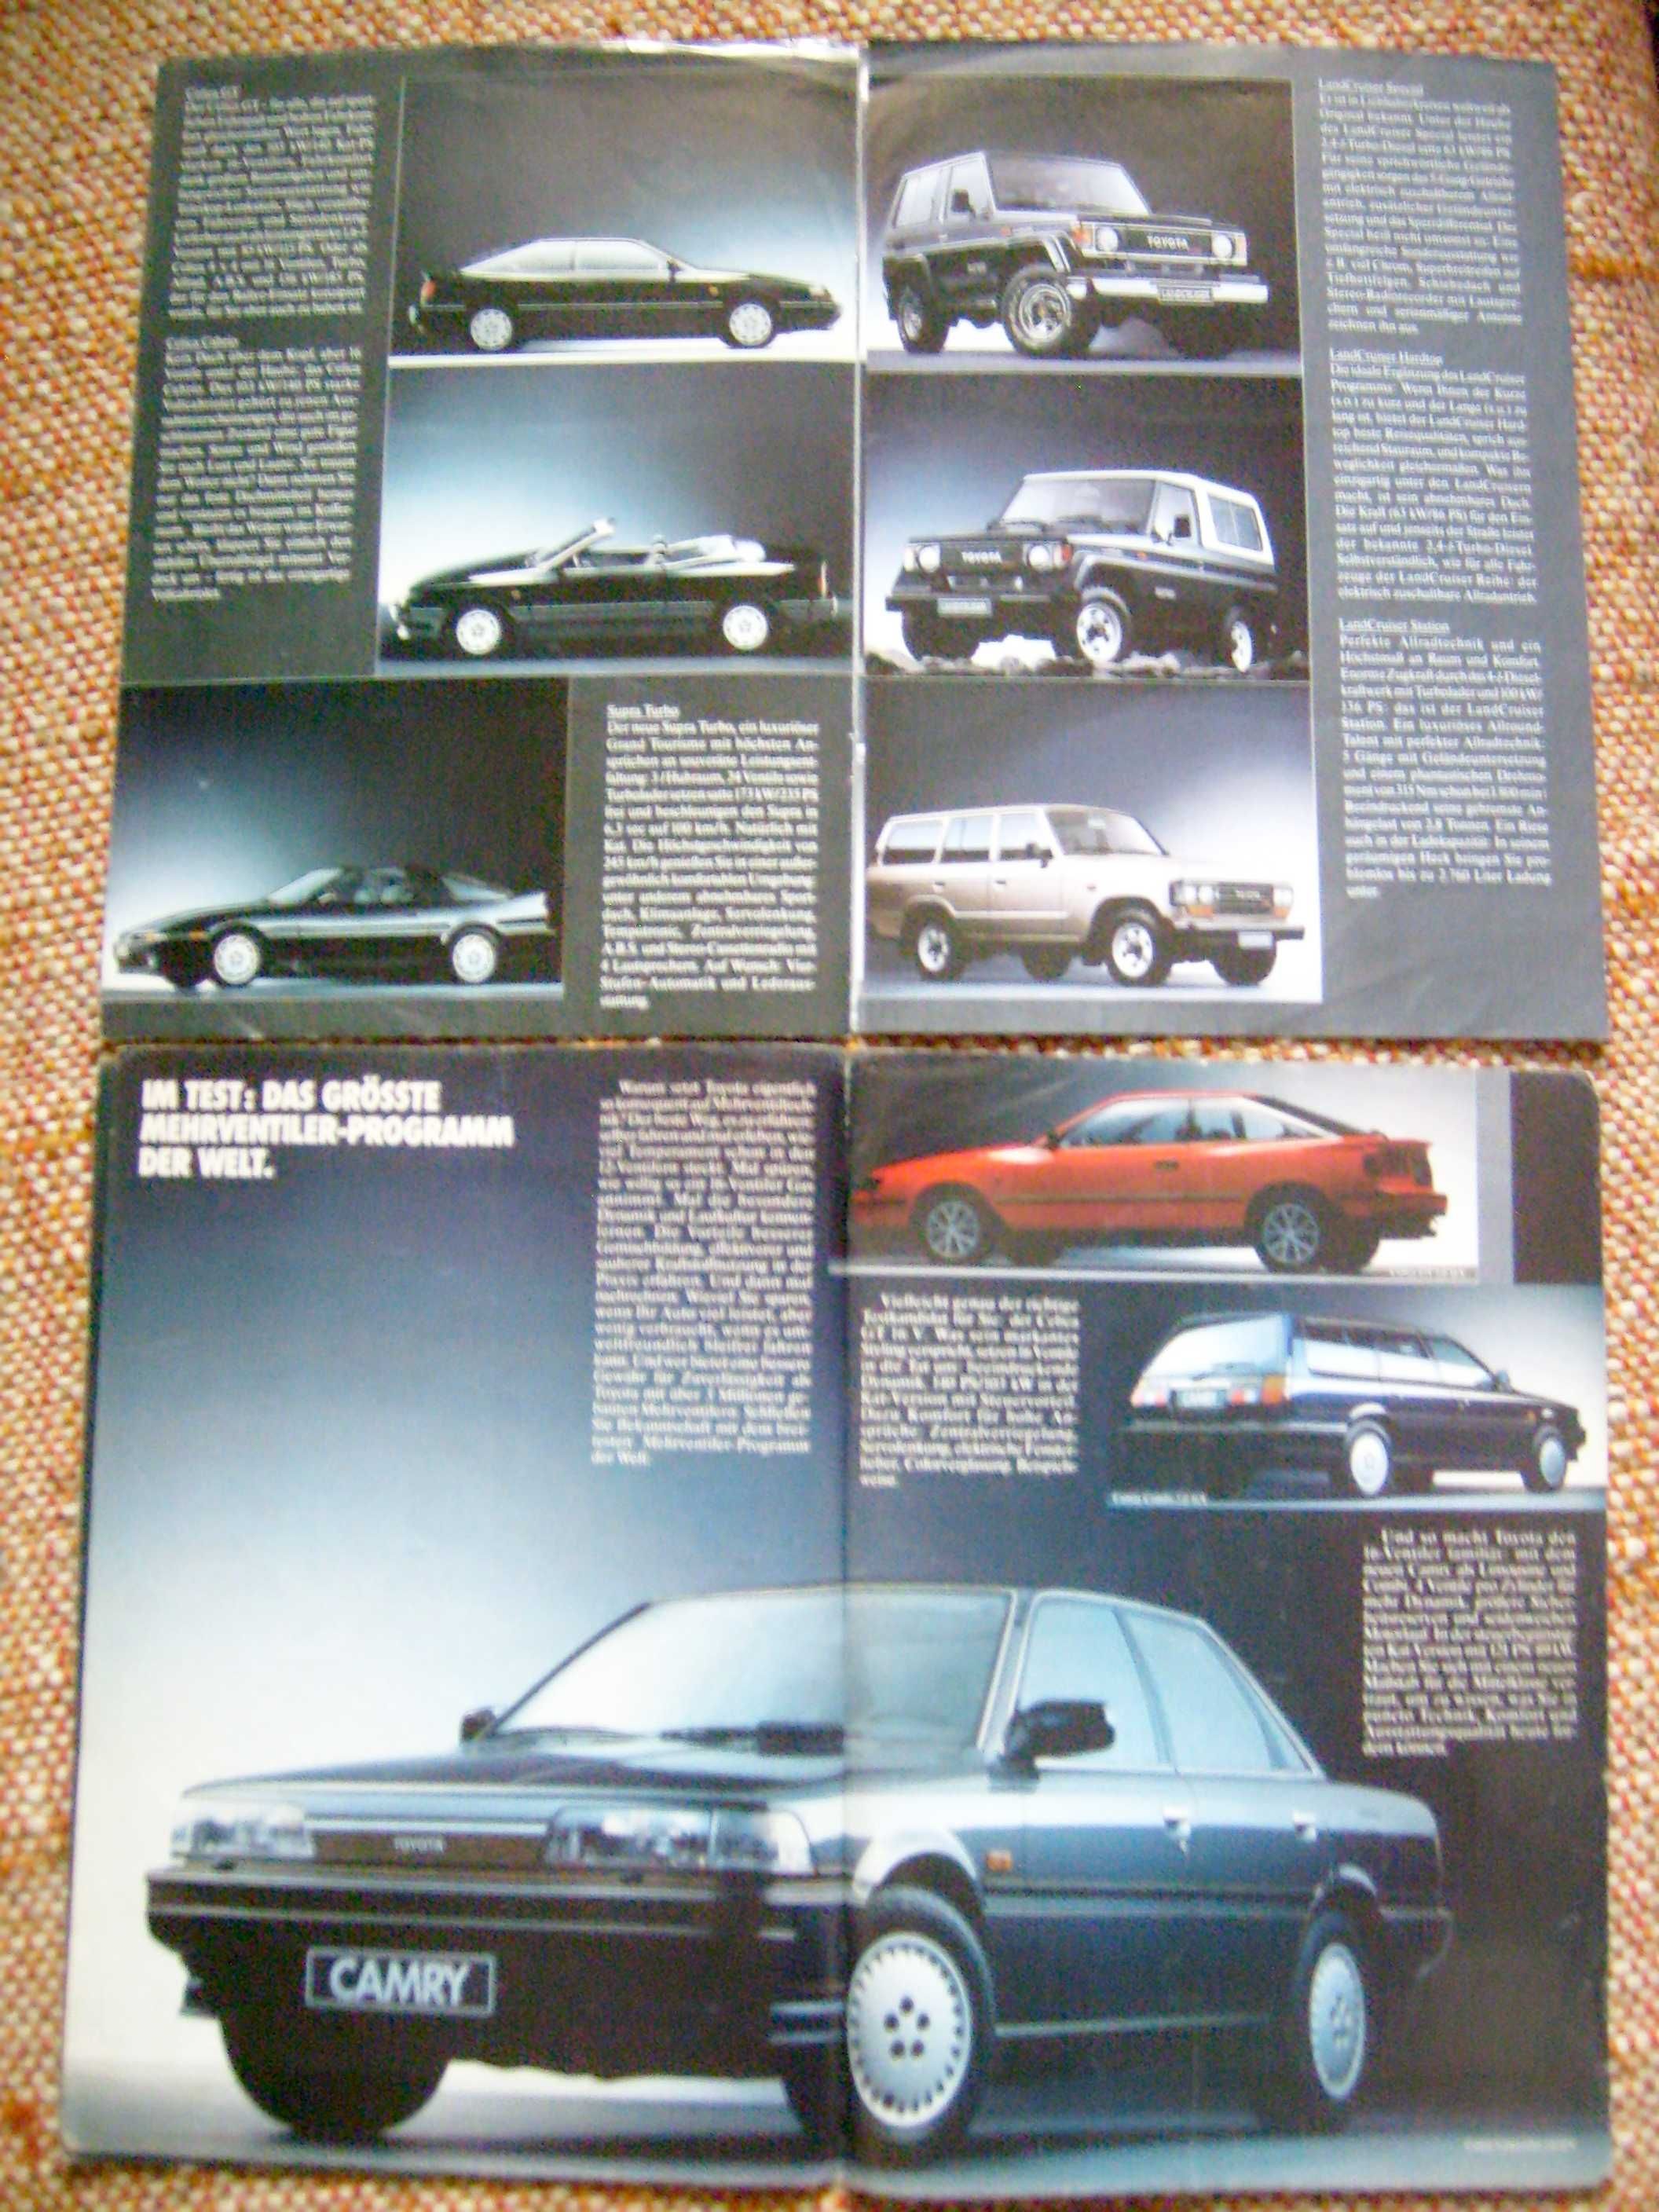 TOYOTA Programm x 3 *1987 - 1988 Camry Supra Celica Corolla...